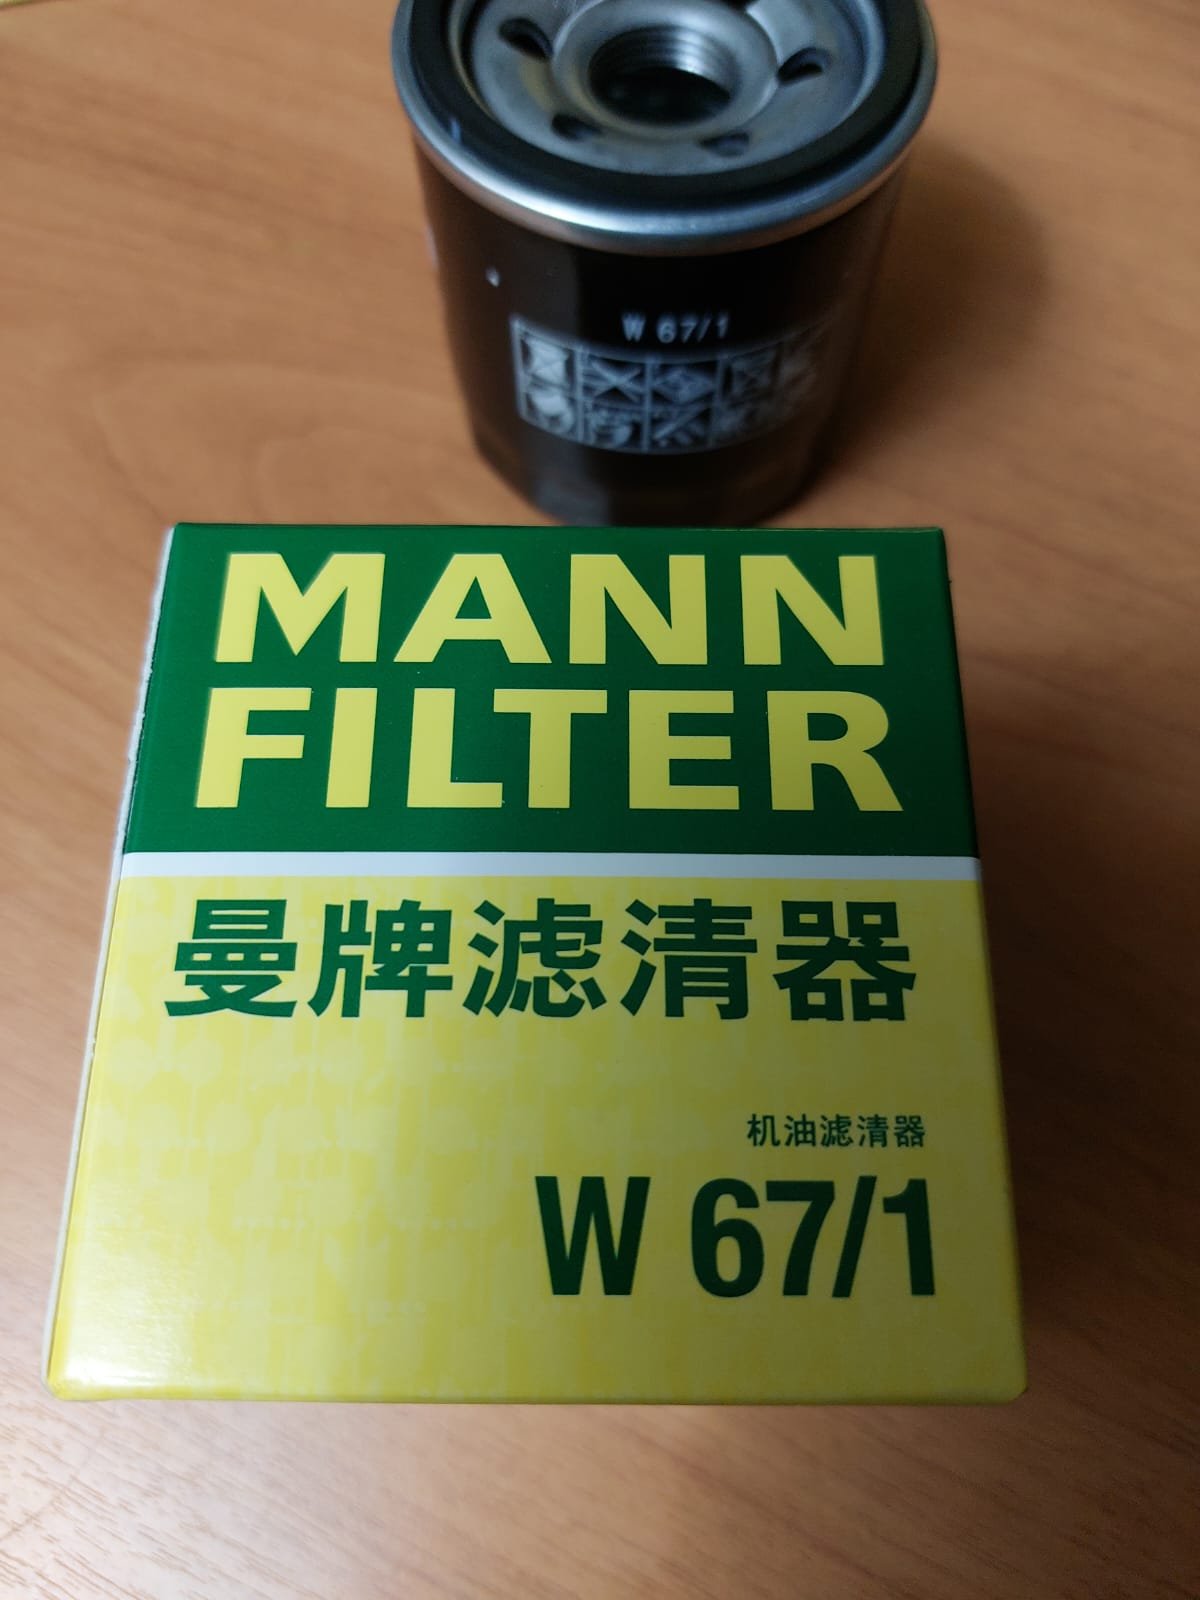 W67 1 фильтр масляный. Фильтр Mann 67/1. Китайский фильтр Mann 67/1. Фильтр Манн 712/73. Фильтр Mann 811/80 made in China.